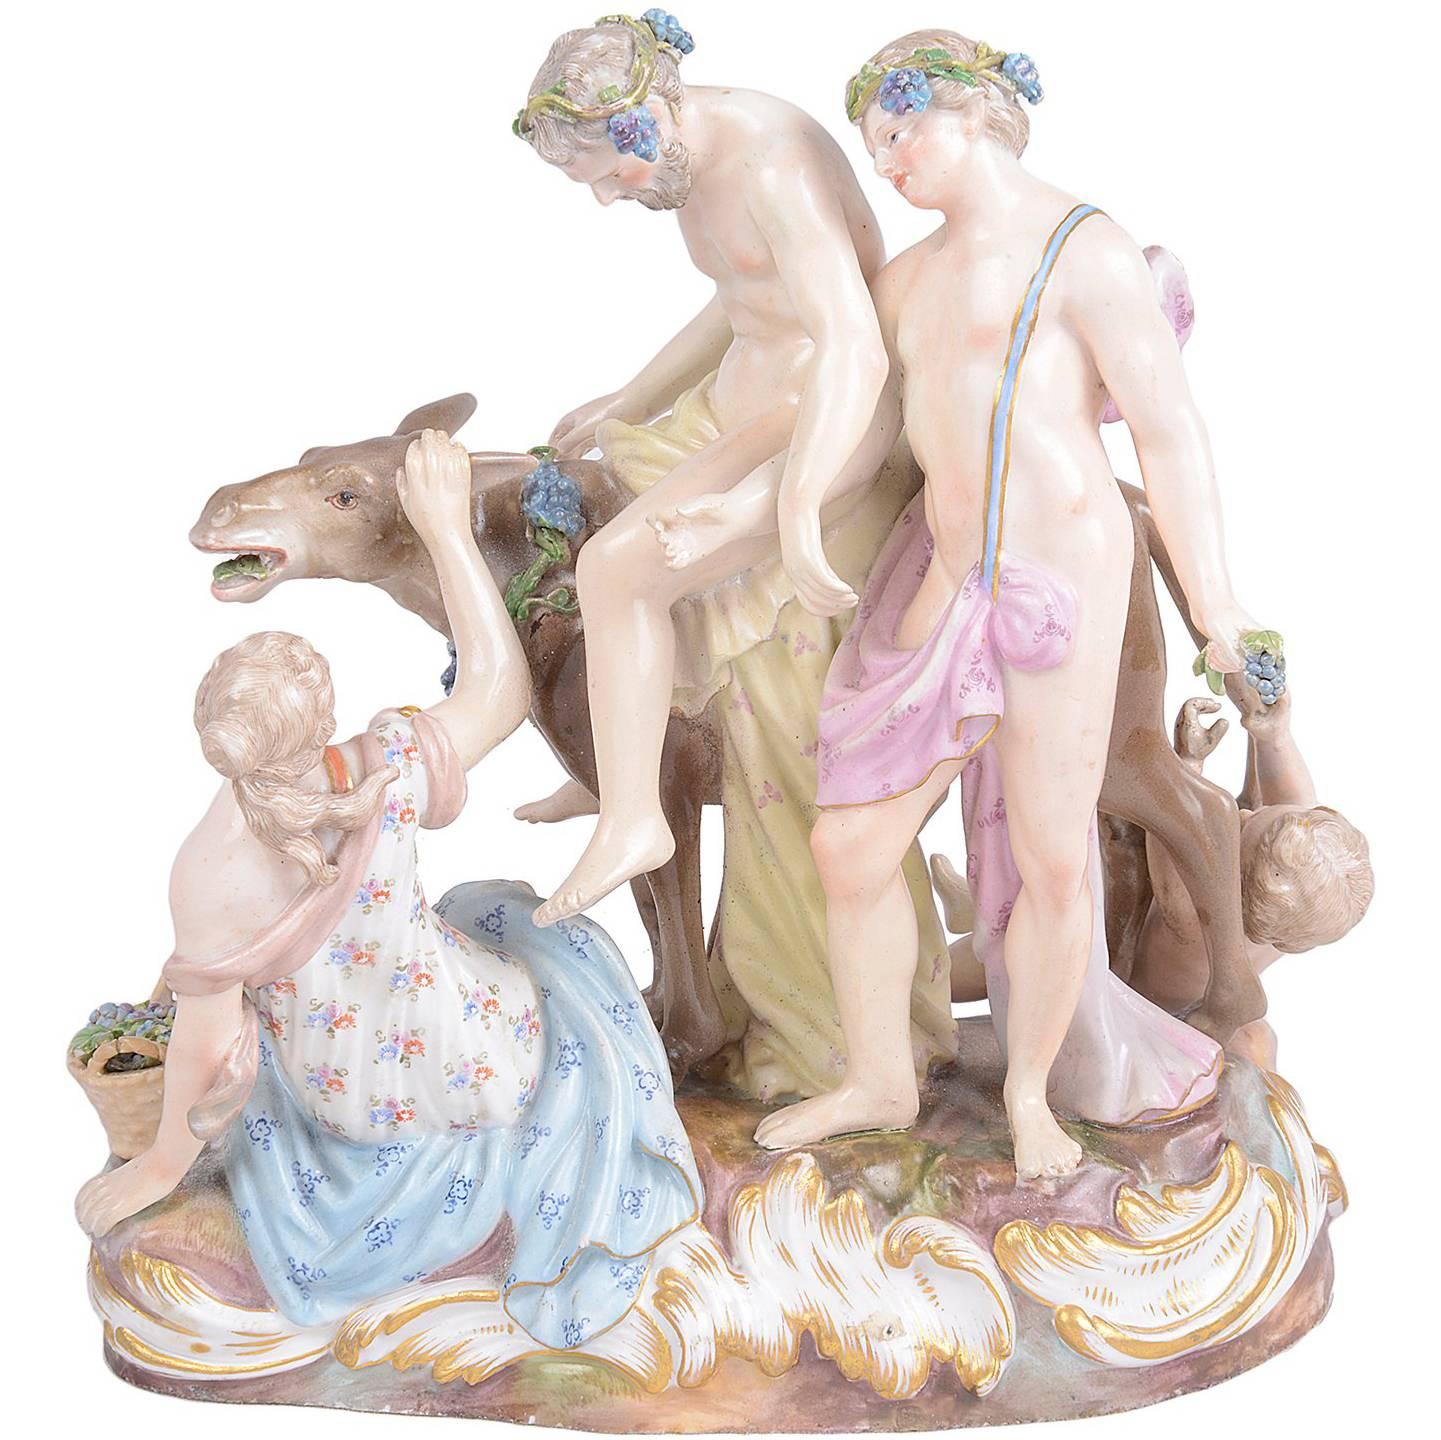 Groupe de figurines en porcelaine de Meissen du 19ème siècle représentant le Drunken Silenus